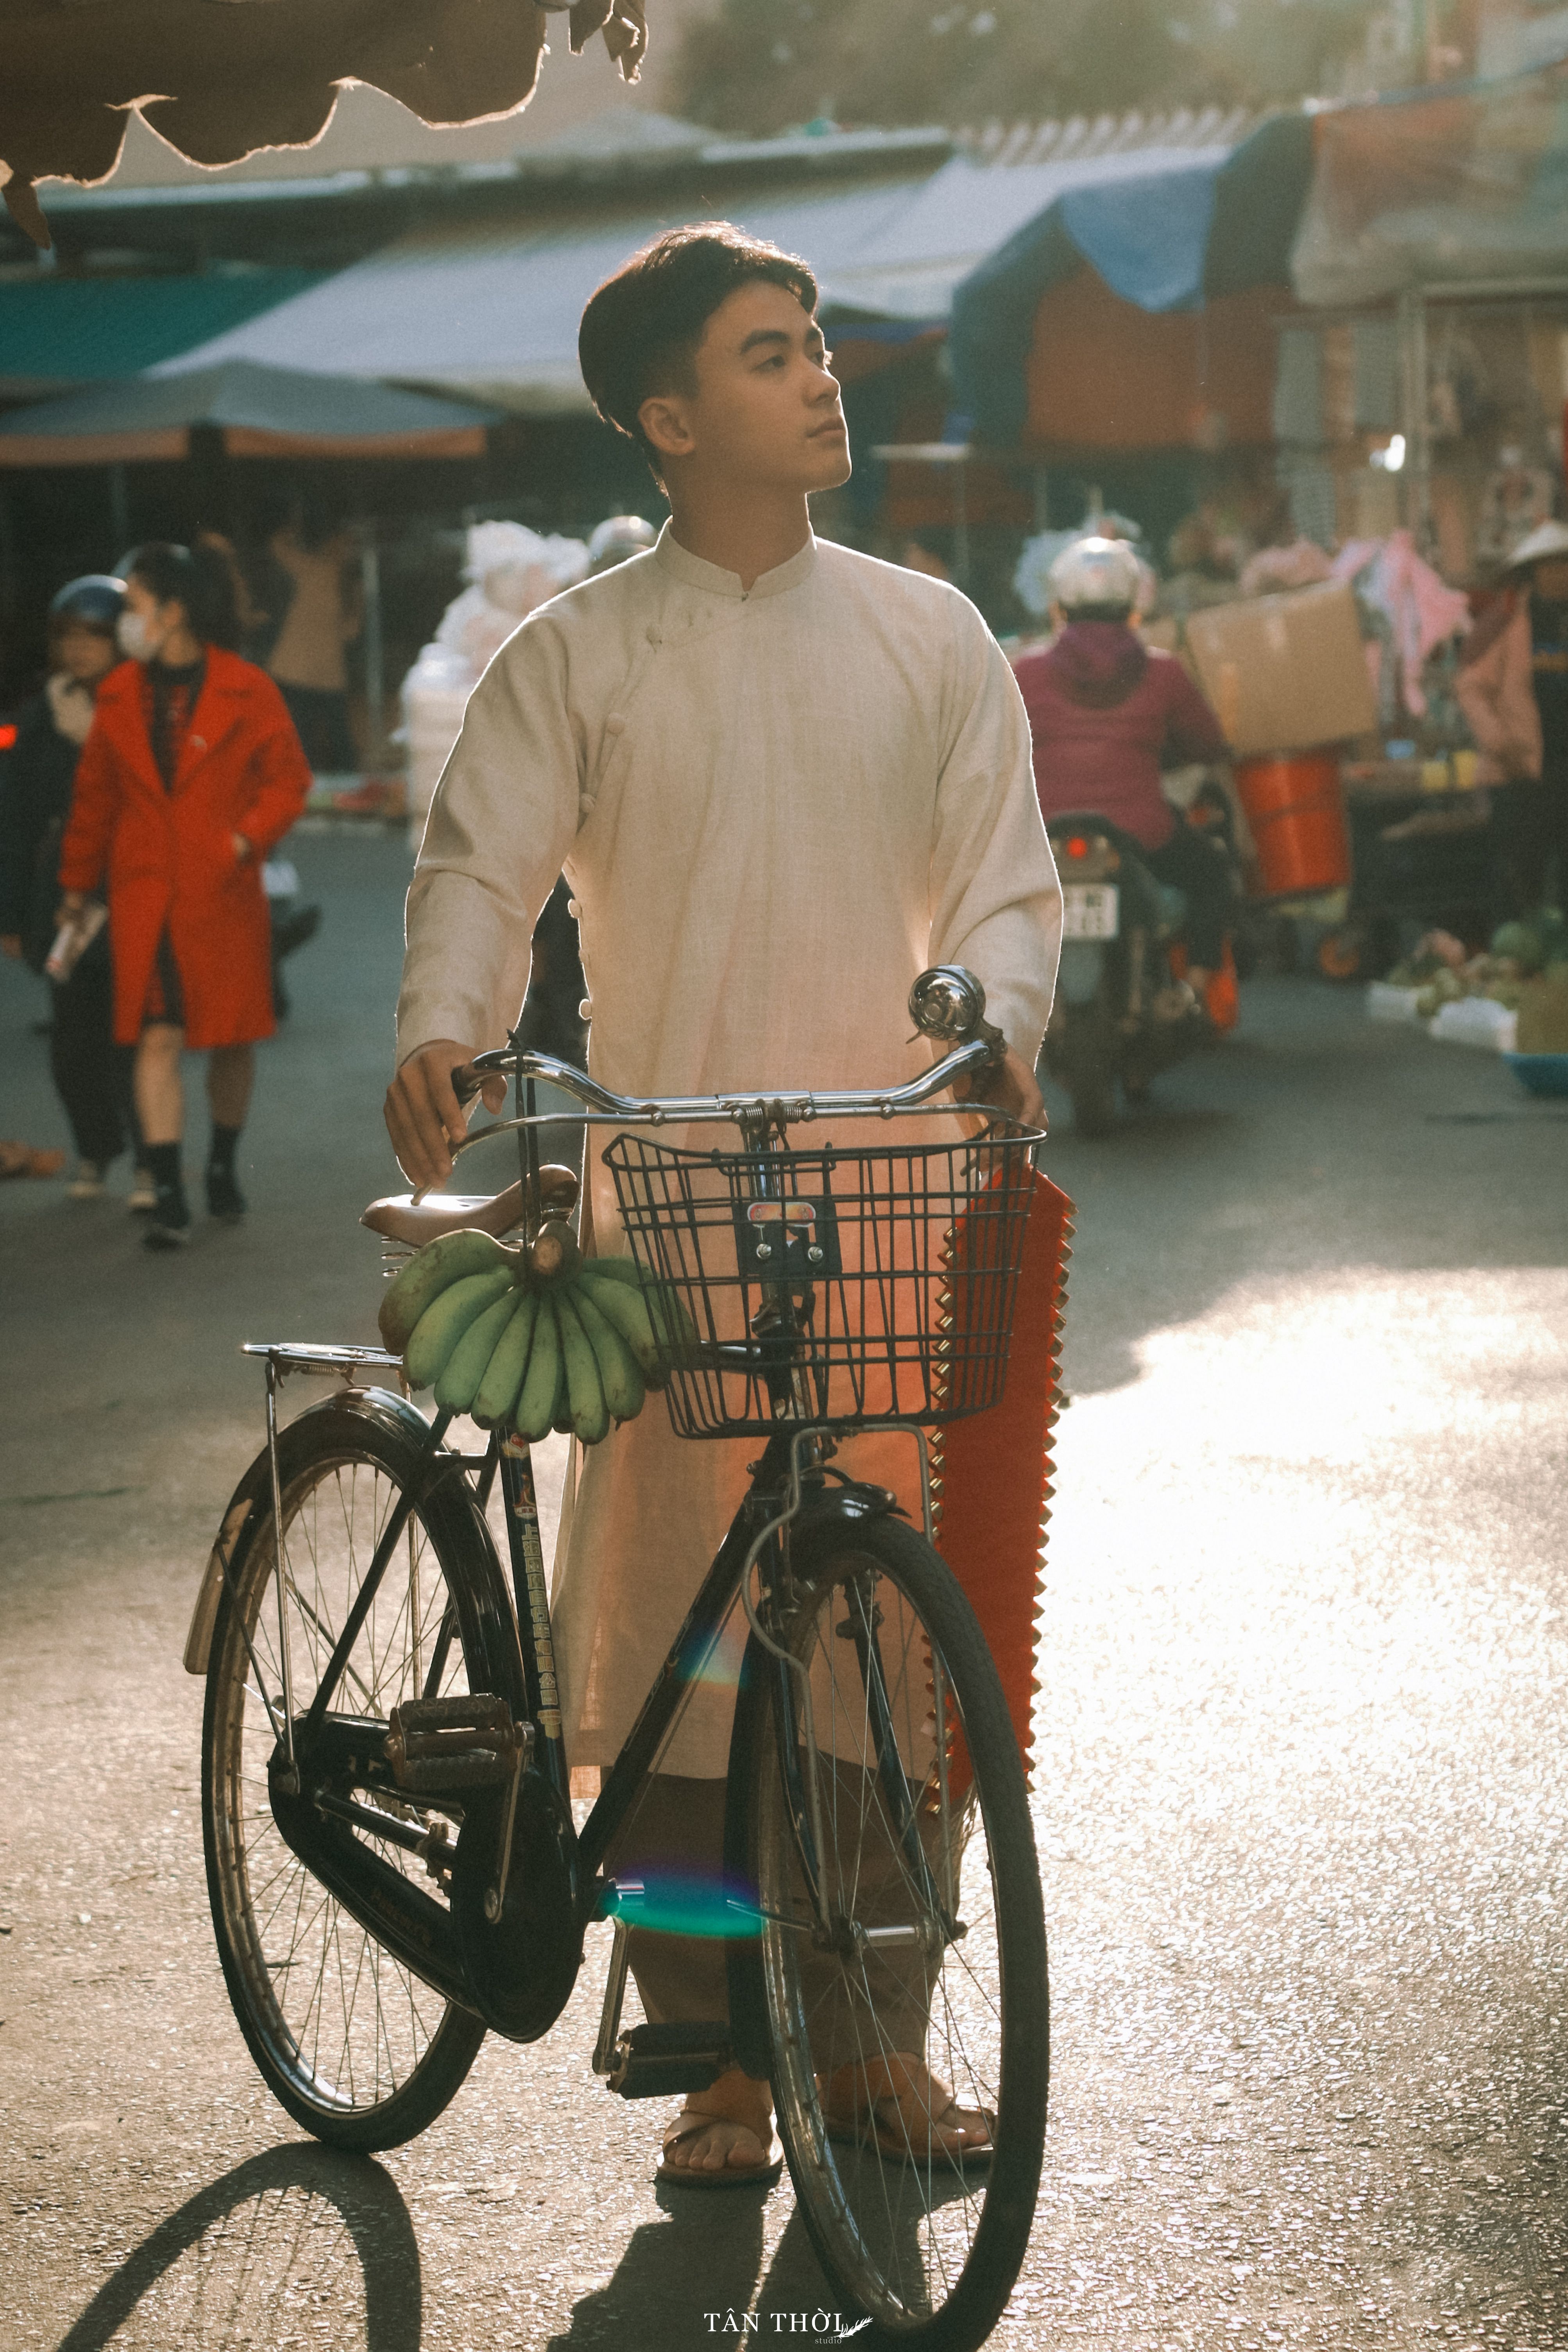 Ảnh tết thập niên 90 với xe đạp cổ: Hãy cùng nhìn lại kỷ niệm Tết cổ truyền thập niên 90 qua những bức ảnh với xe đạp cổ đặc trưng. Những hình ảnh này không chỉ là kỷ niệm đẹp mà còn phản ánh những giá trị văn hóa truyền thống của dân tộc Việt trong dịp Tết.